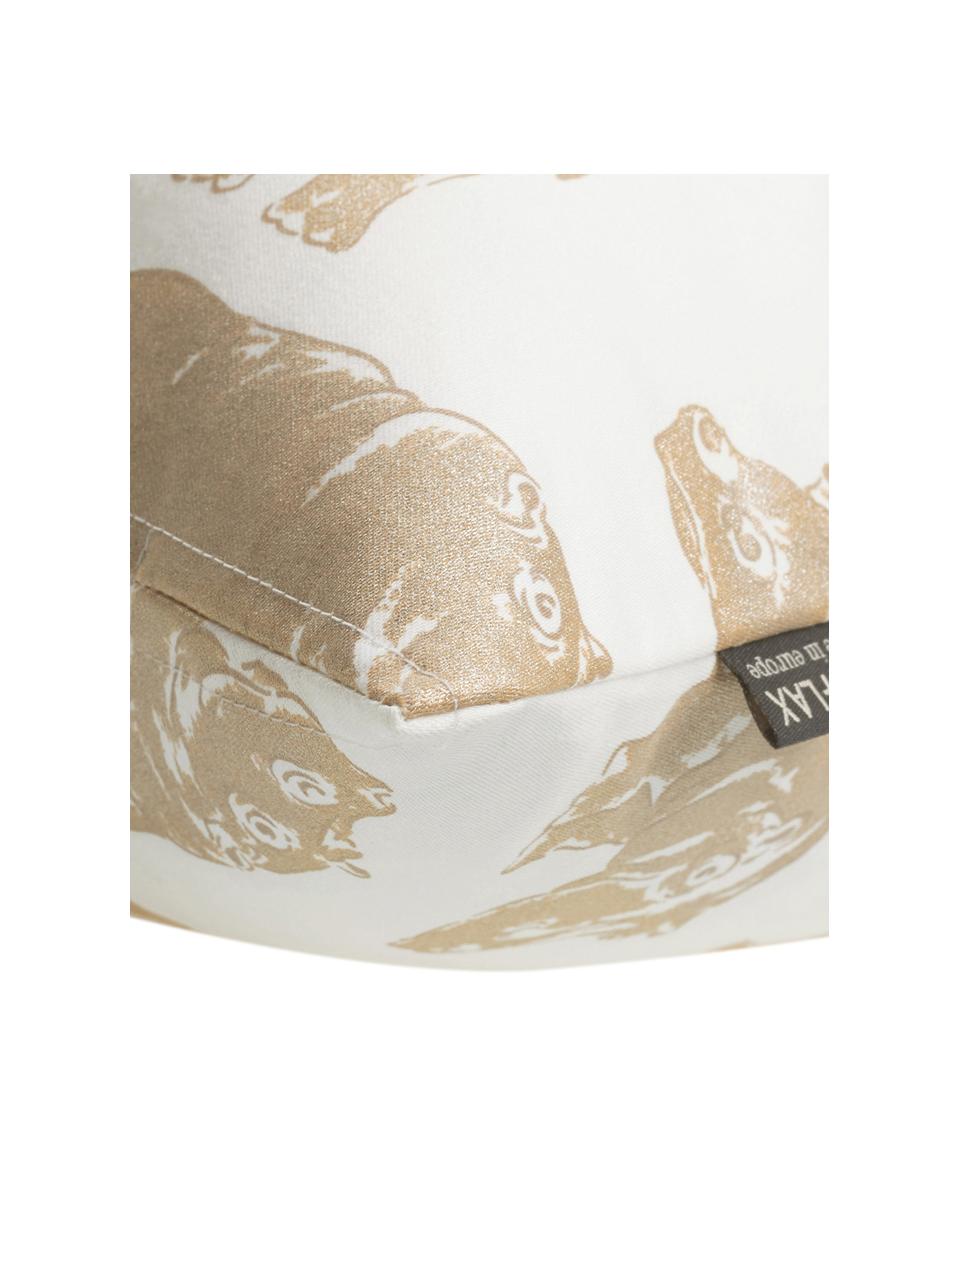 Kissenhülle Hippo mit Tierdruck in Gold/Creme, Baumwolle, Weiss, Goldfarben, 40 x 40 cm